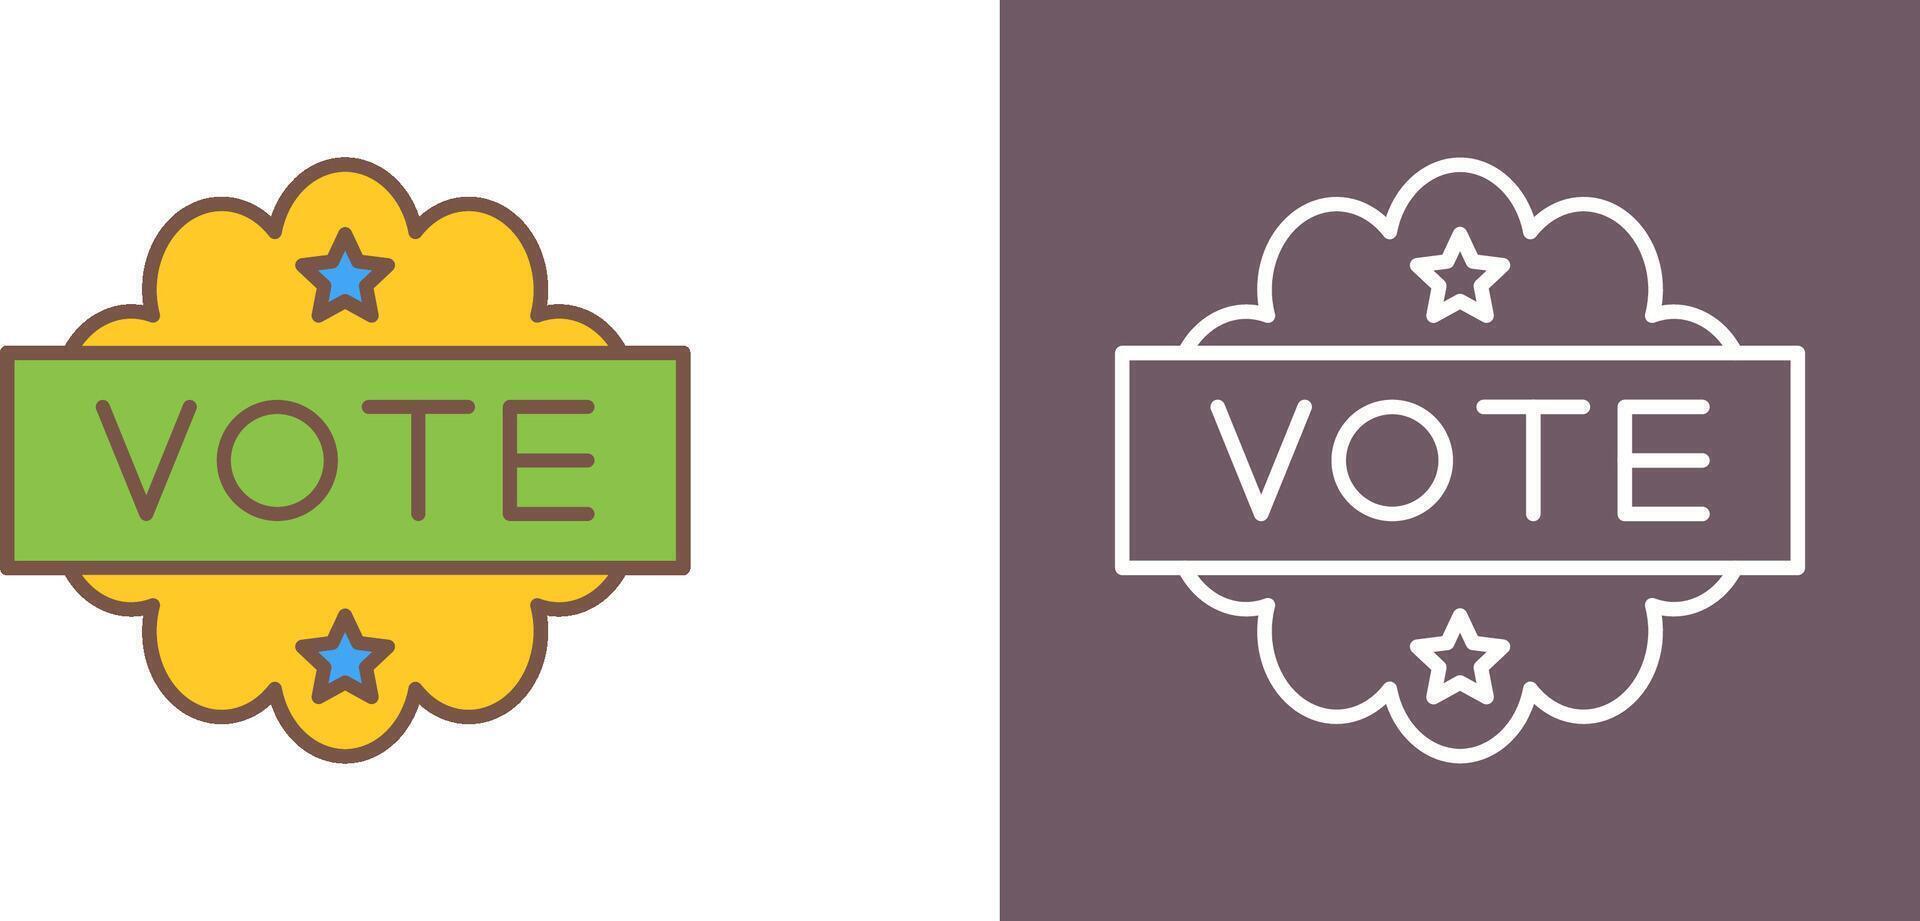 diseño de icono de voto vector